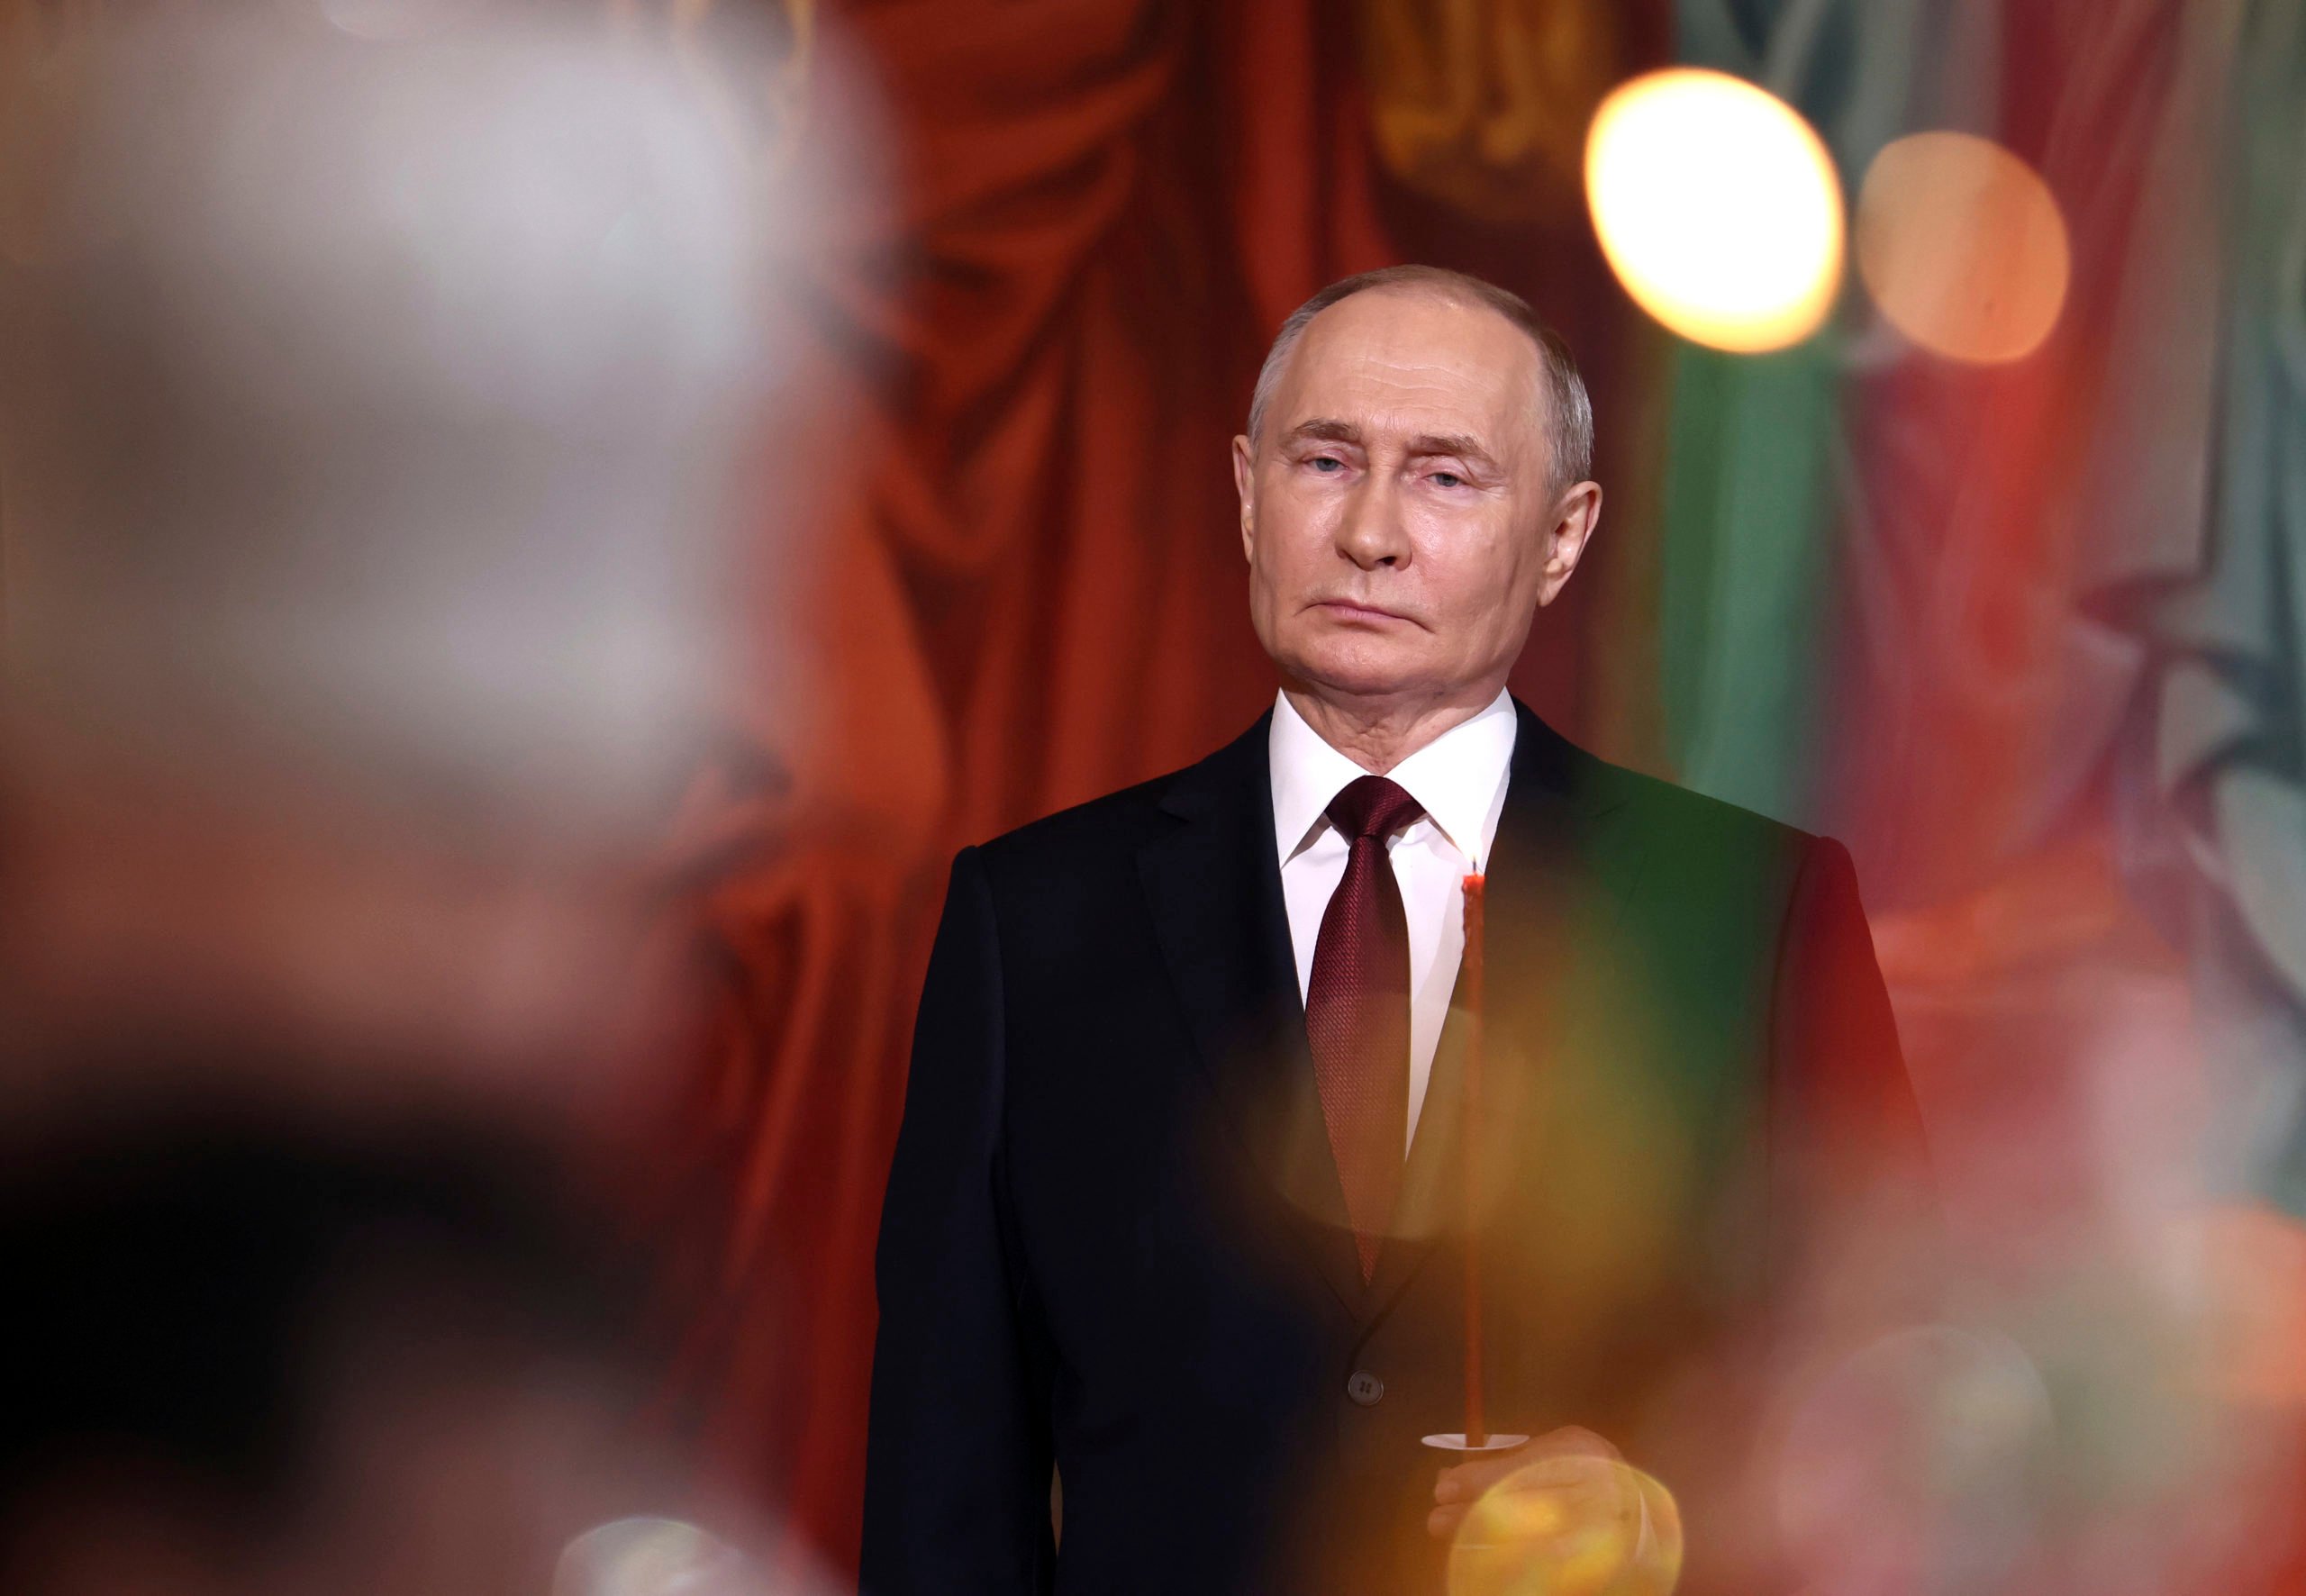 geheimdienste warnen: russland plant sabotage und anschläge in europa